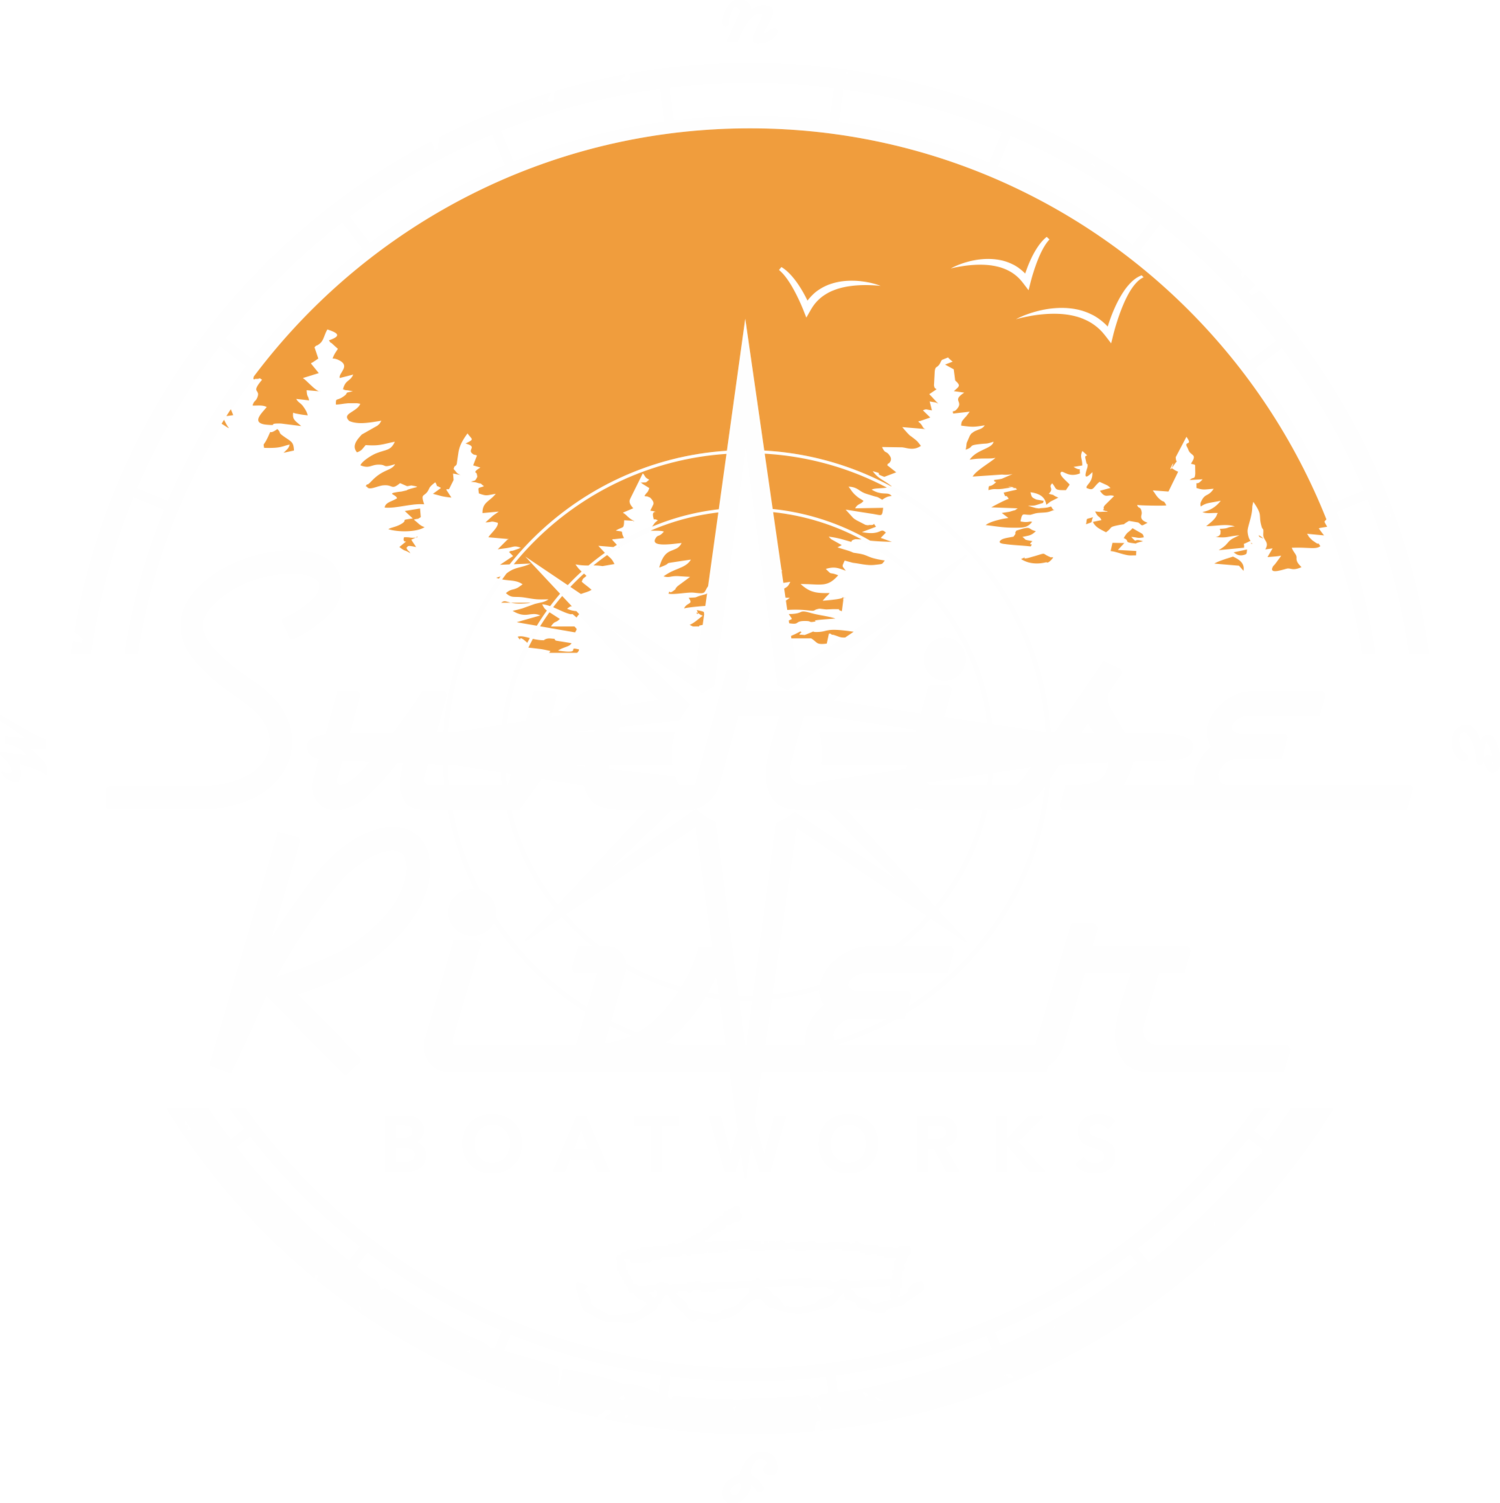 Sunrise River Boatworks